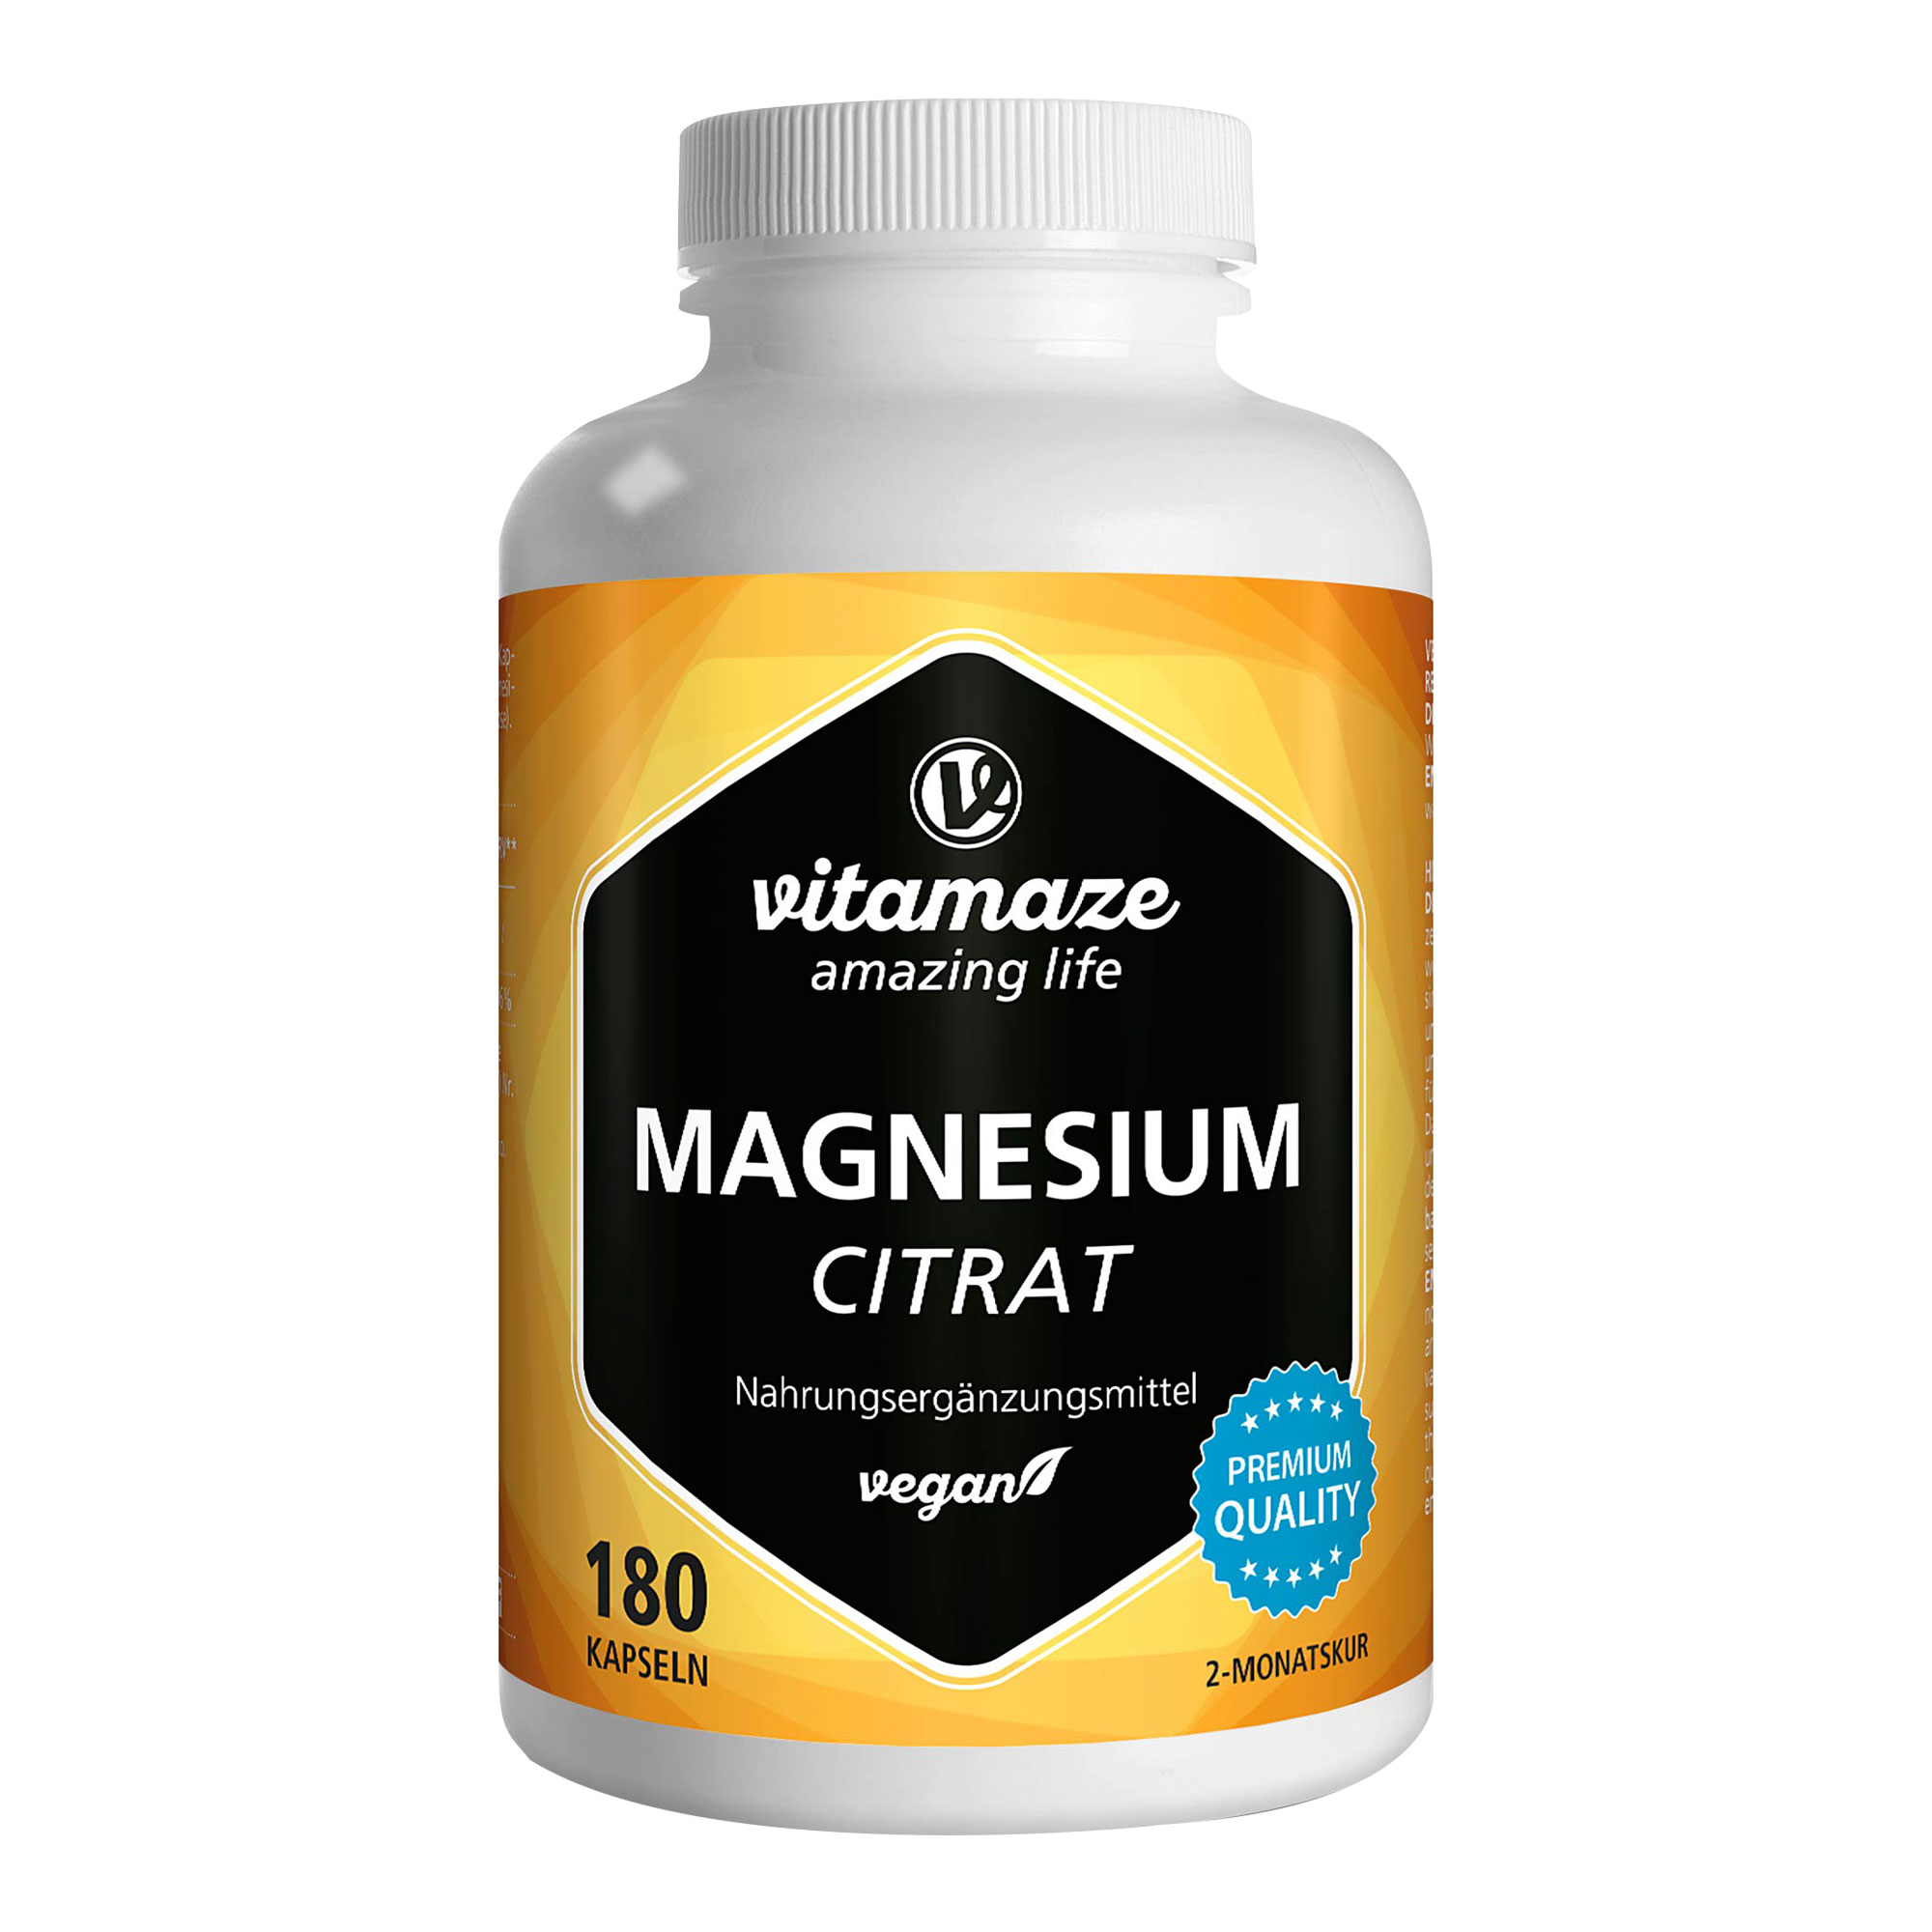 Nahrungsergänzungsmittel mit Magnesium. Für 2 Monate Dauerversorgung.